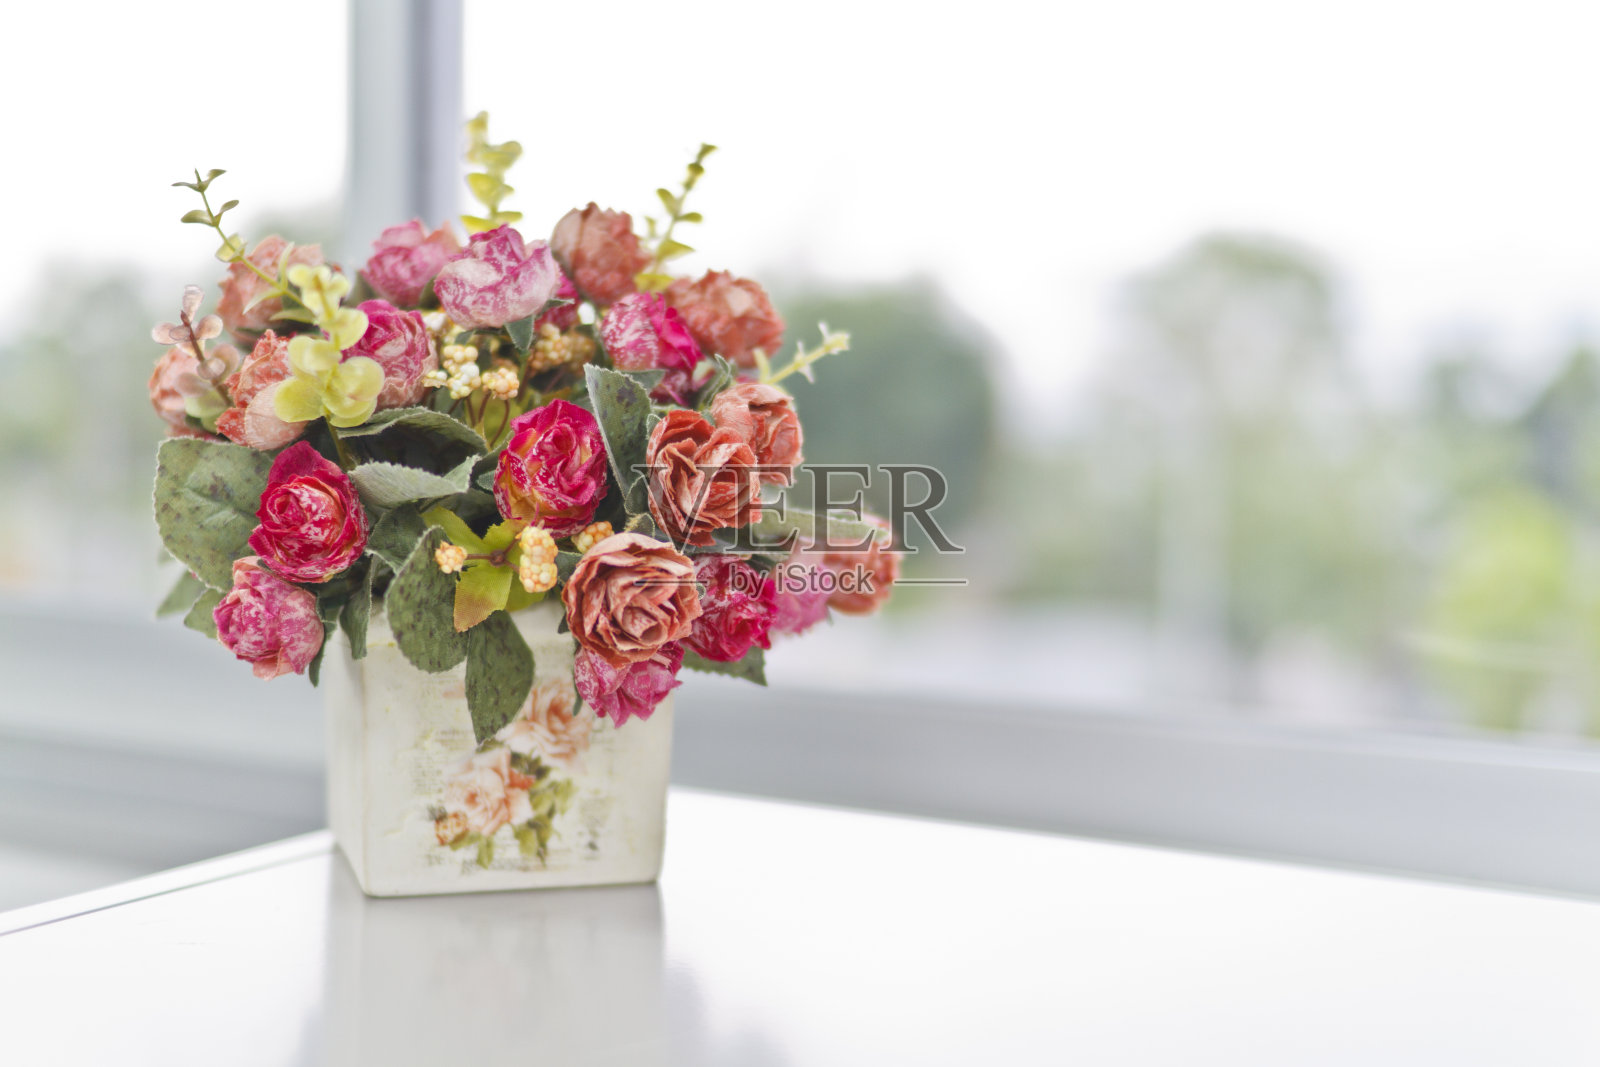 白色桌子上放着一只装满粉红色花朵的花瓶照片摄影图片